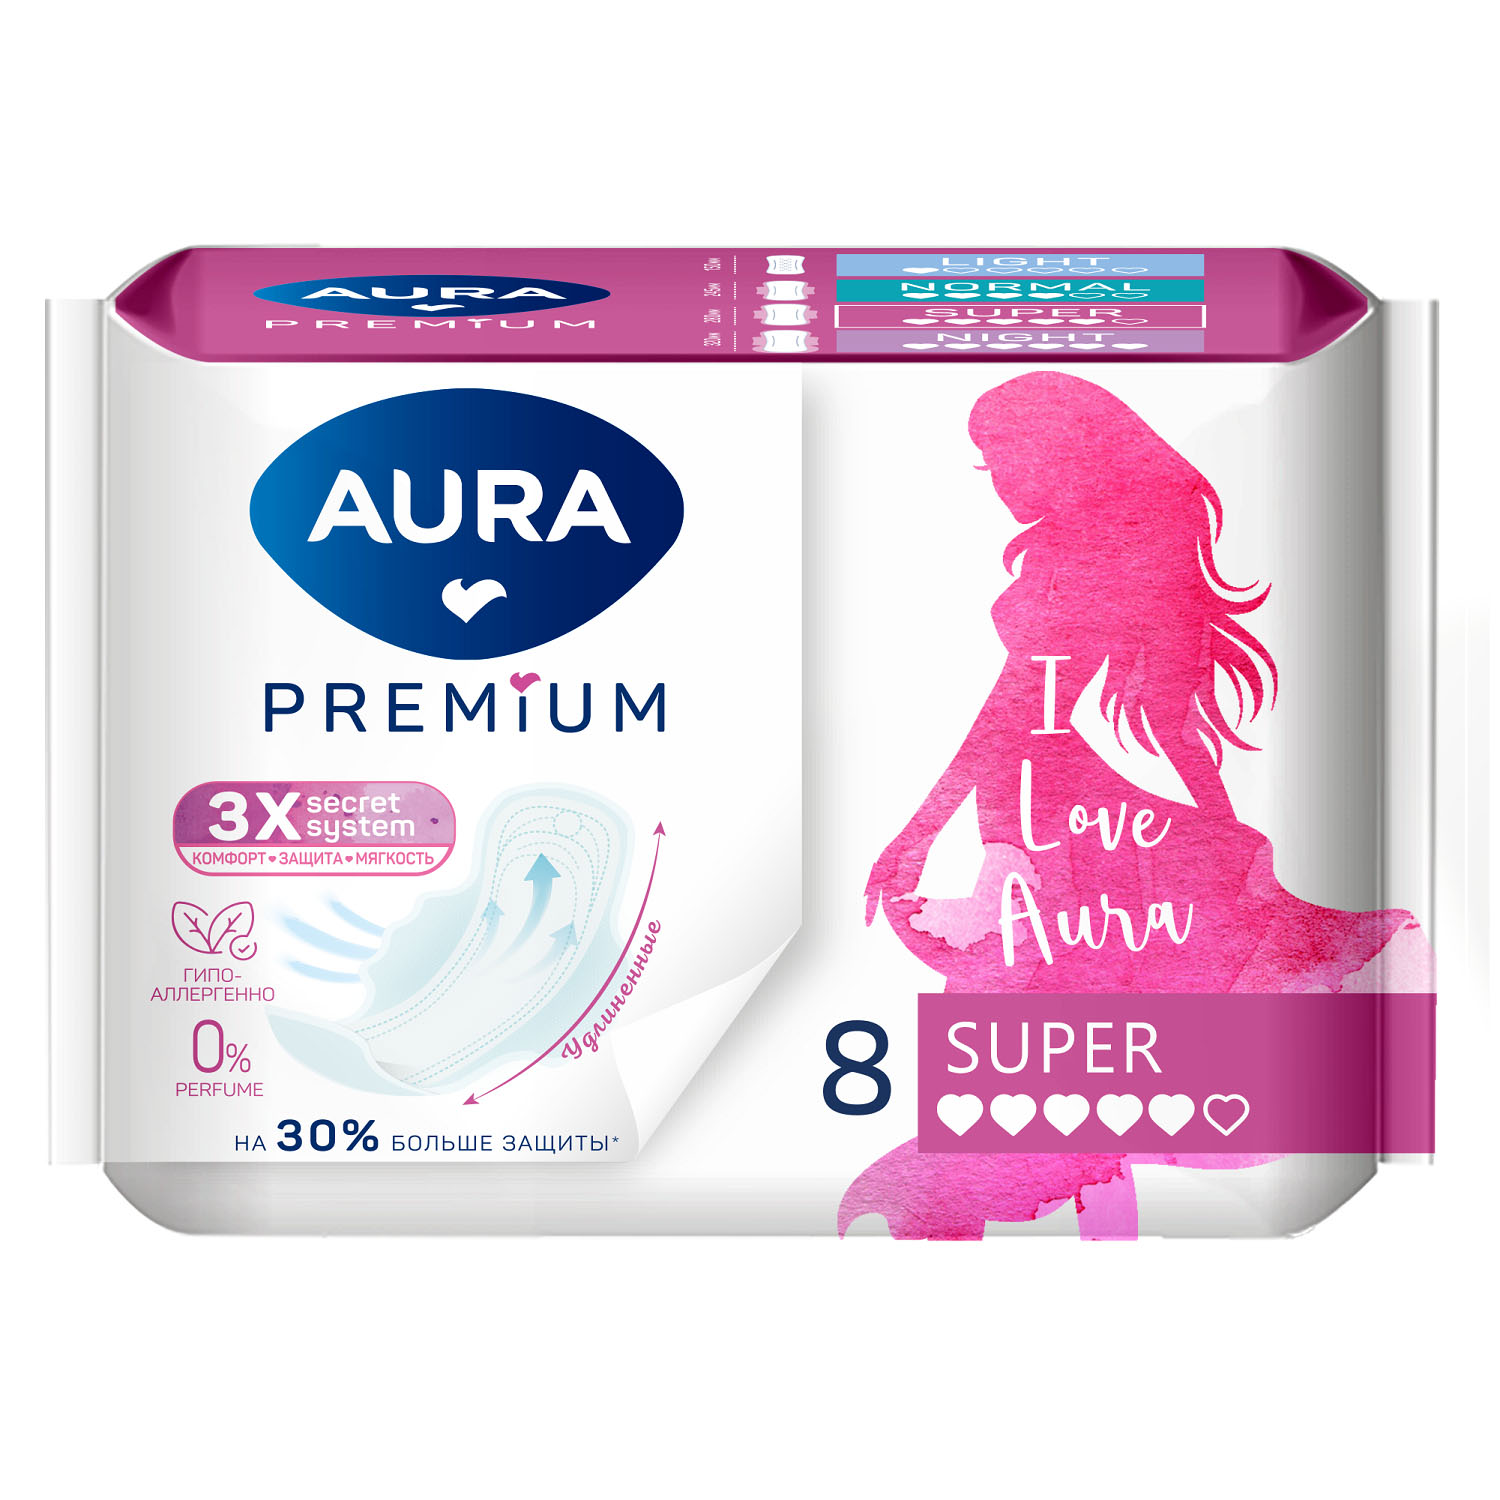 Aura Удлиненные прокладки Super, 8 шт (Aura, Гигиена) прокладки женские aura premium super 8 шт